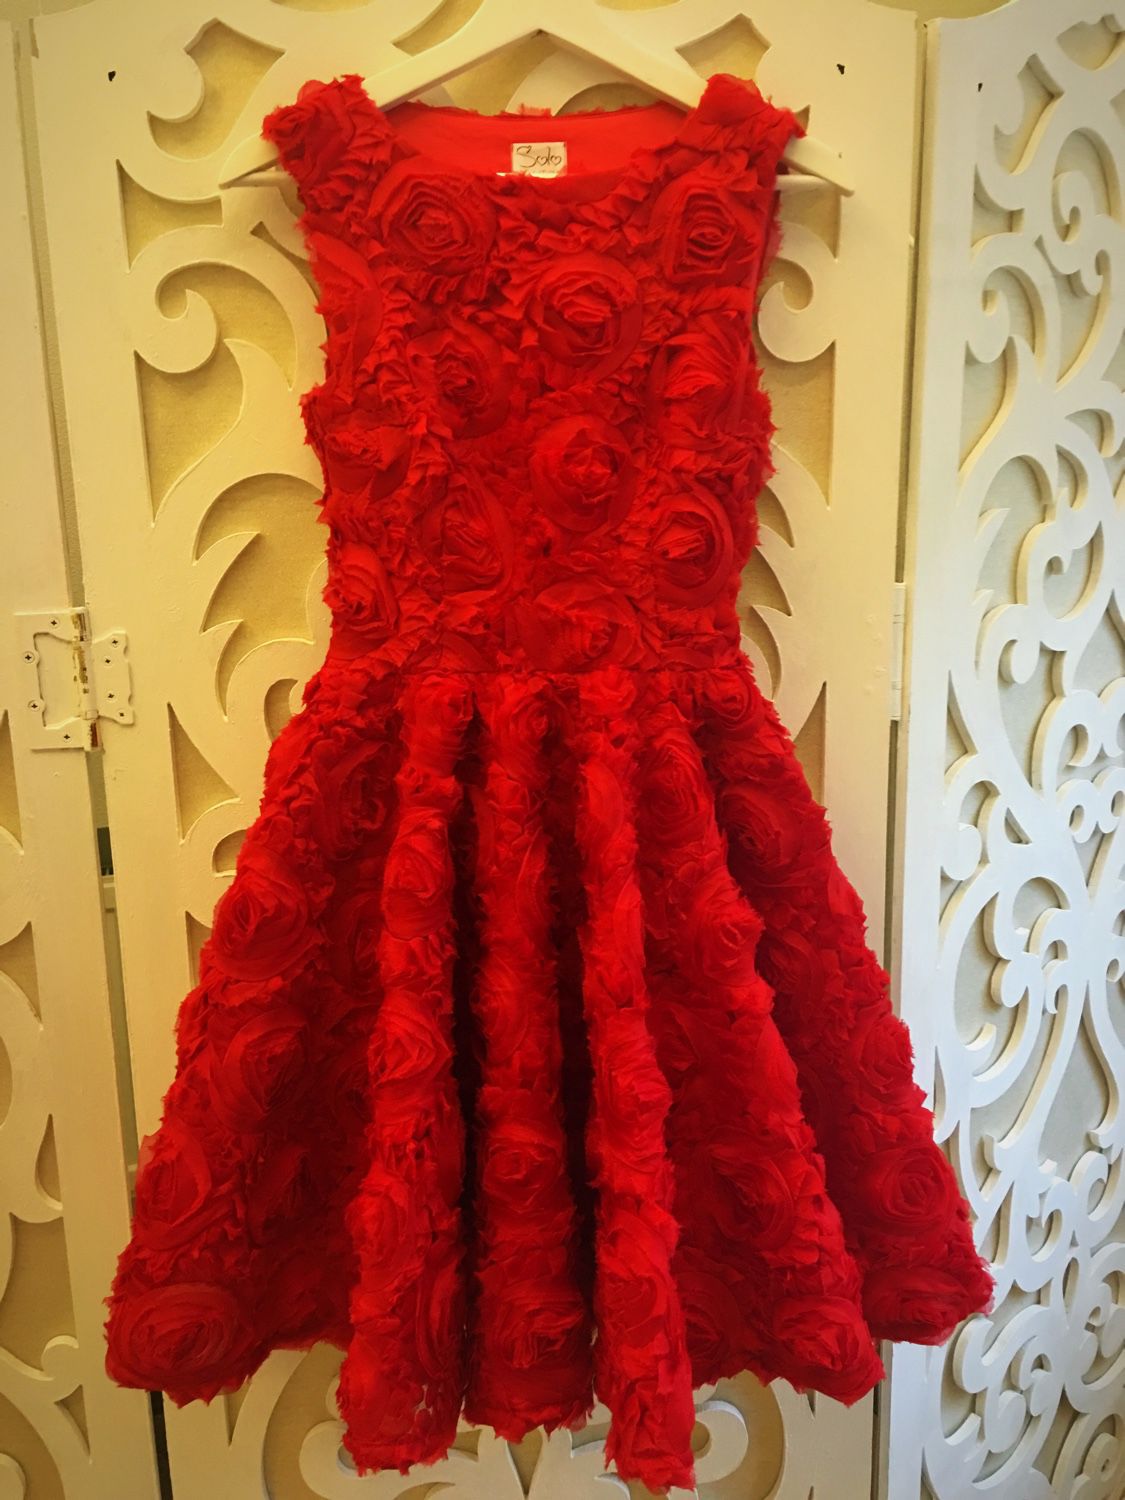 Авито Купить Красное Платье